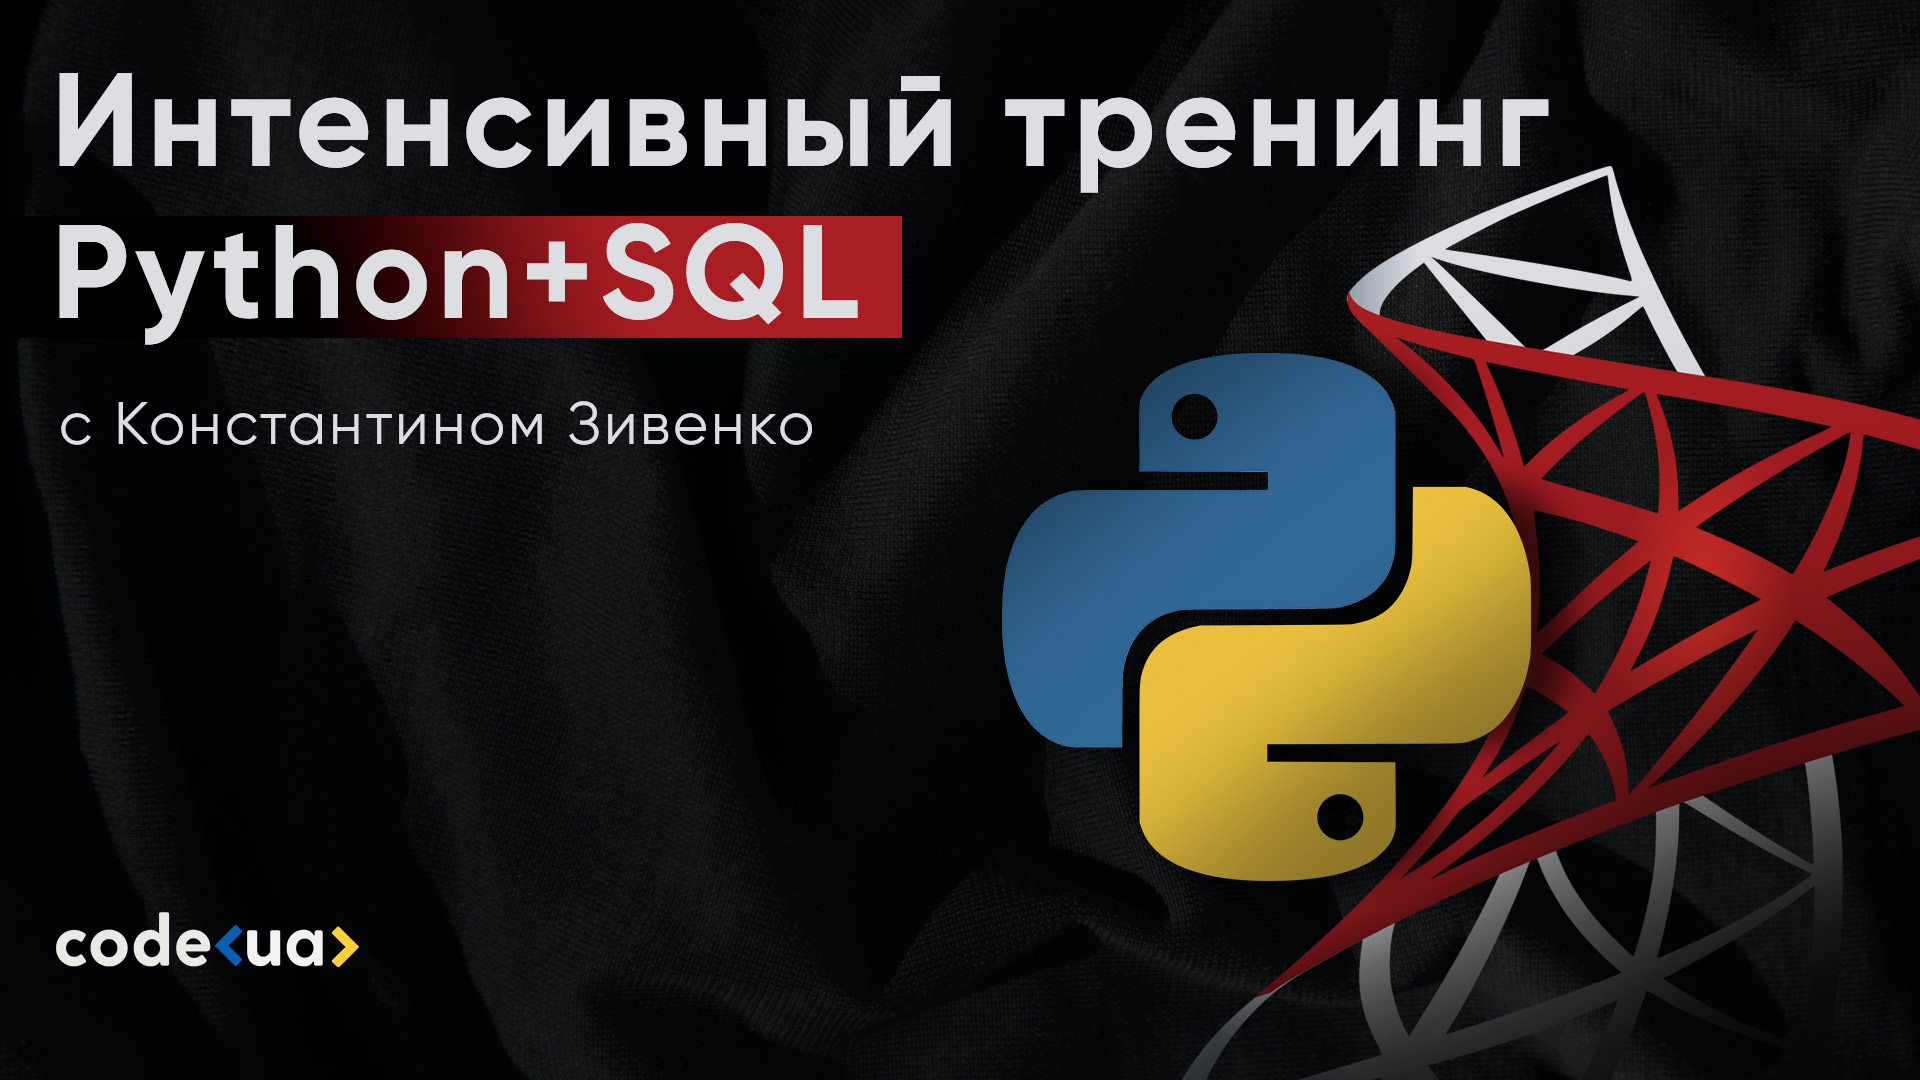 Python+SQL: как начать использовать БД и писать SQL-запросы